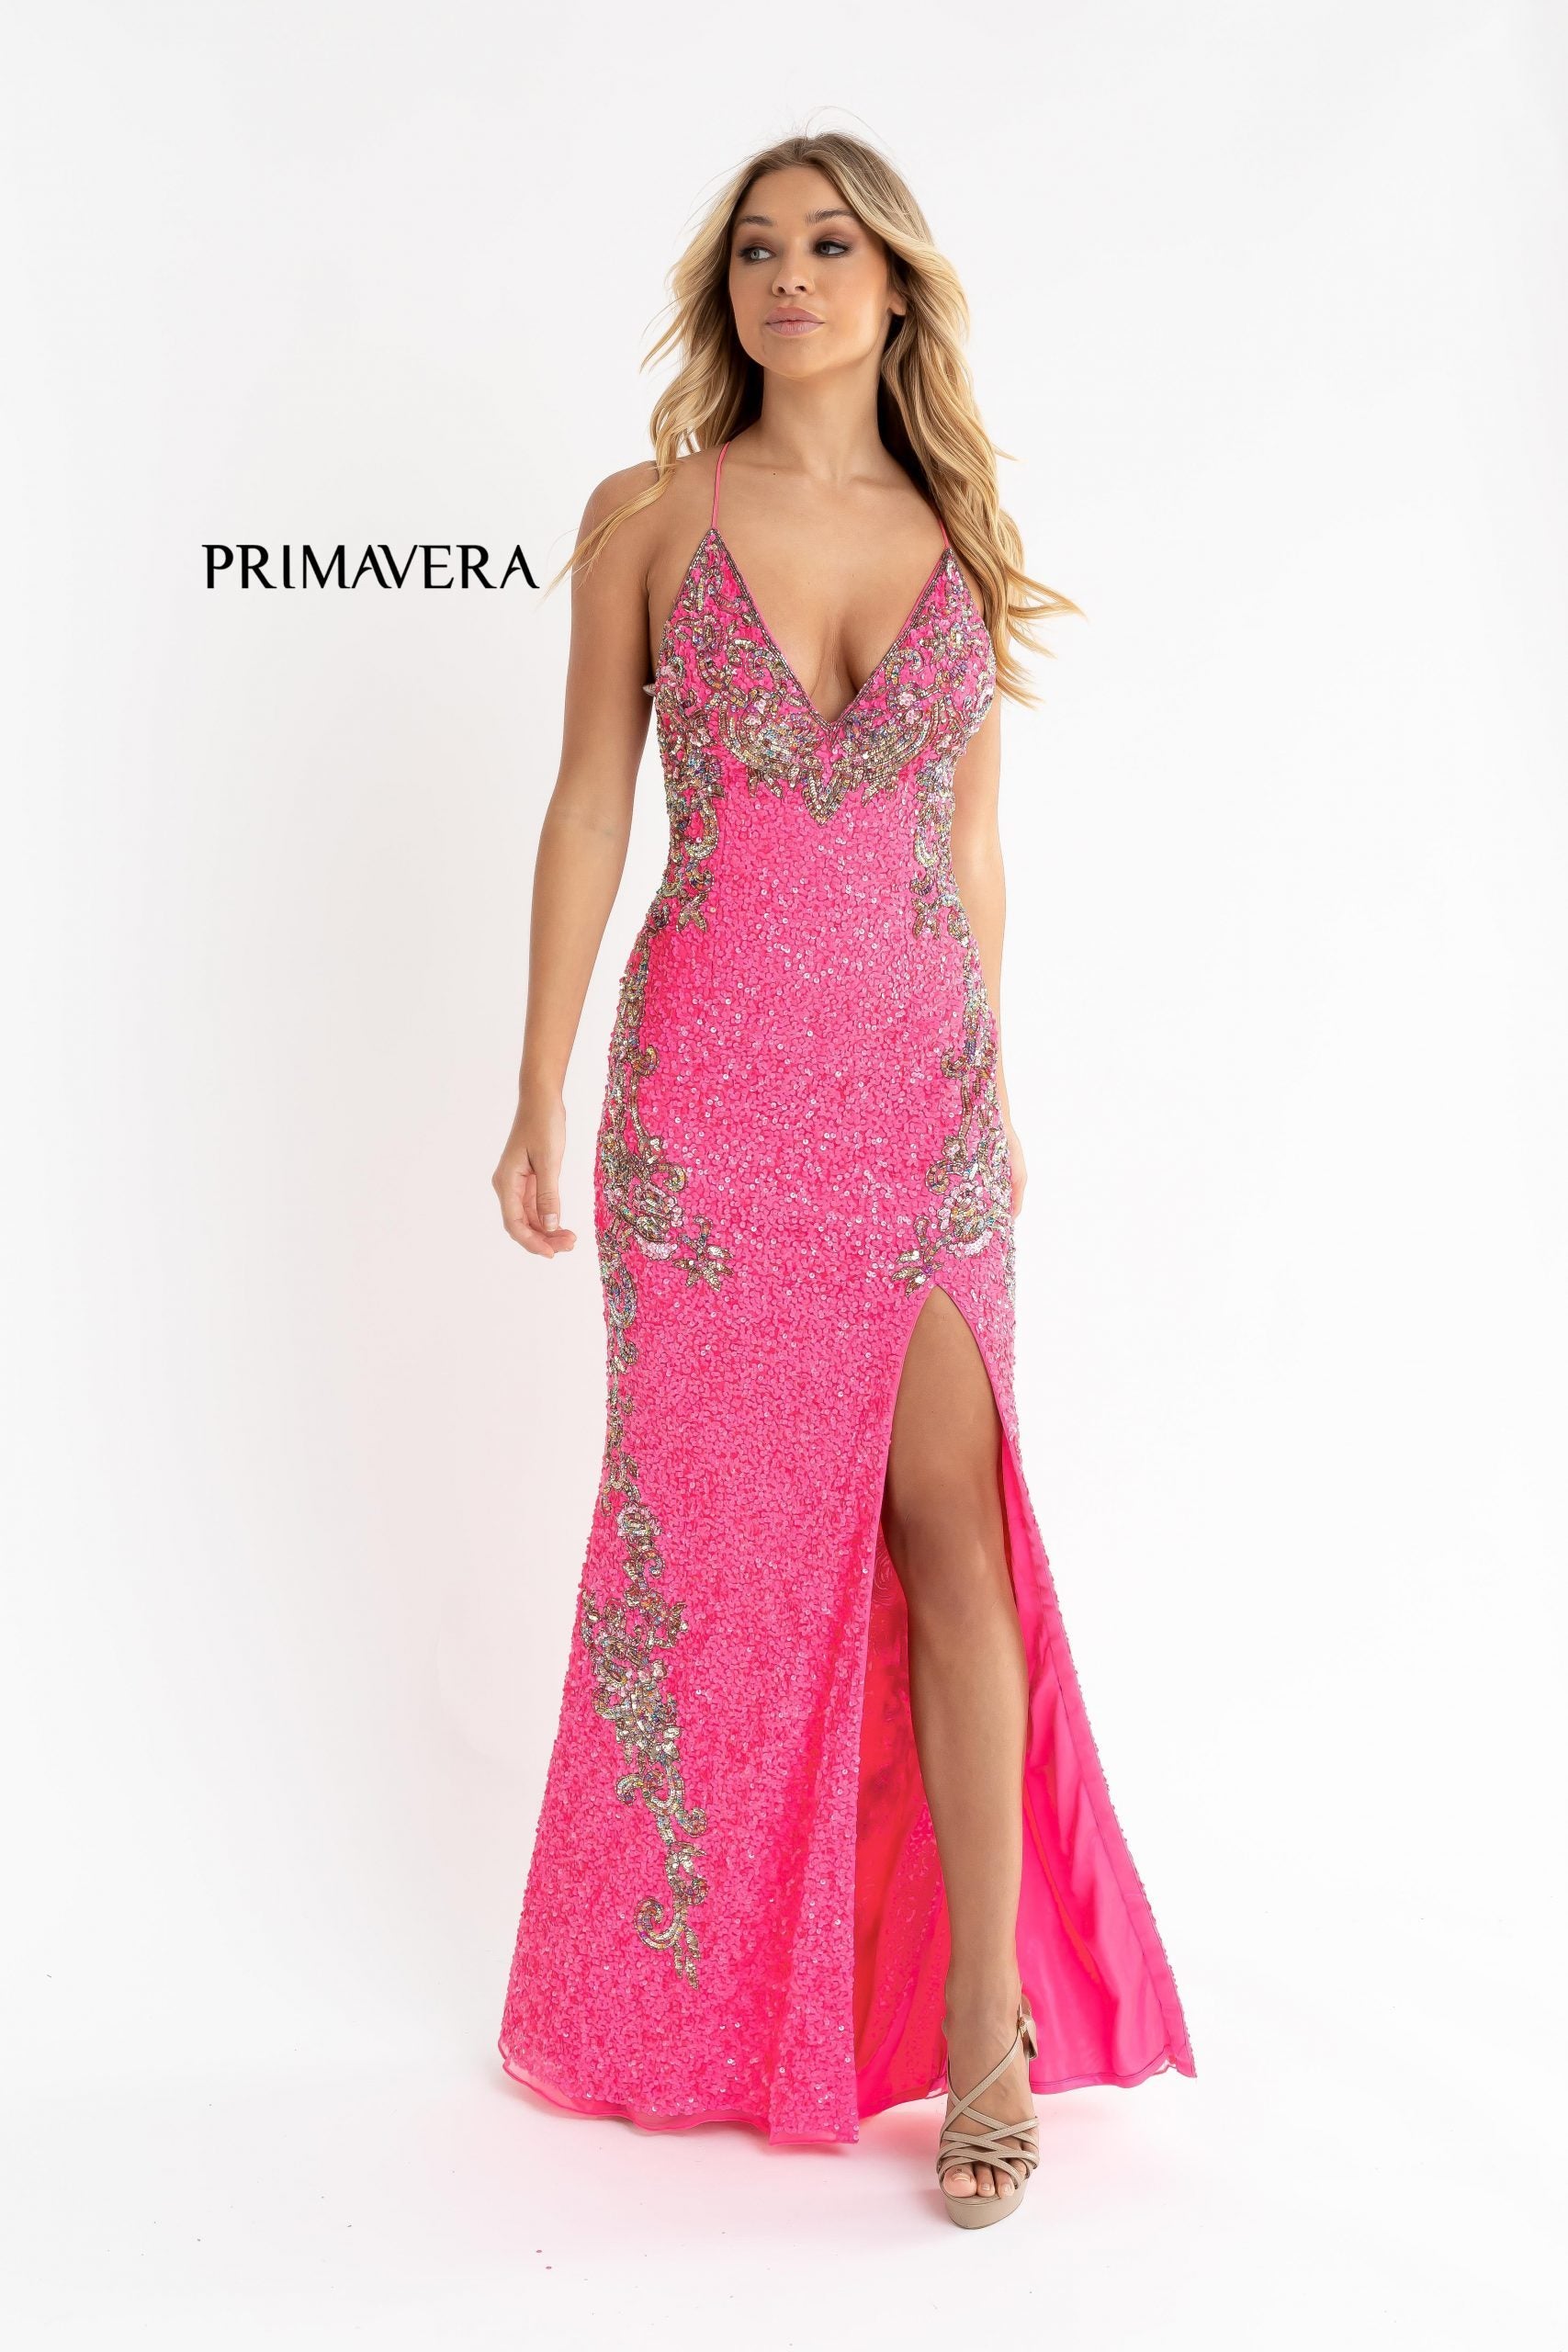 Primavera-couture-3211-NEON-PINK-prom-dress-front-2-v-neckline-floral-sequins-lace-up-tie-back-slit